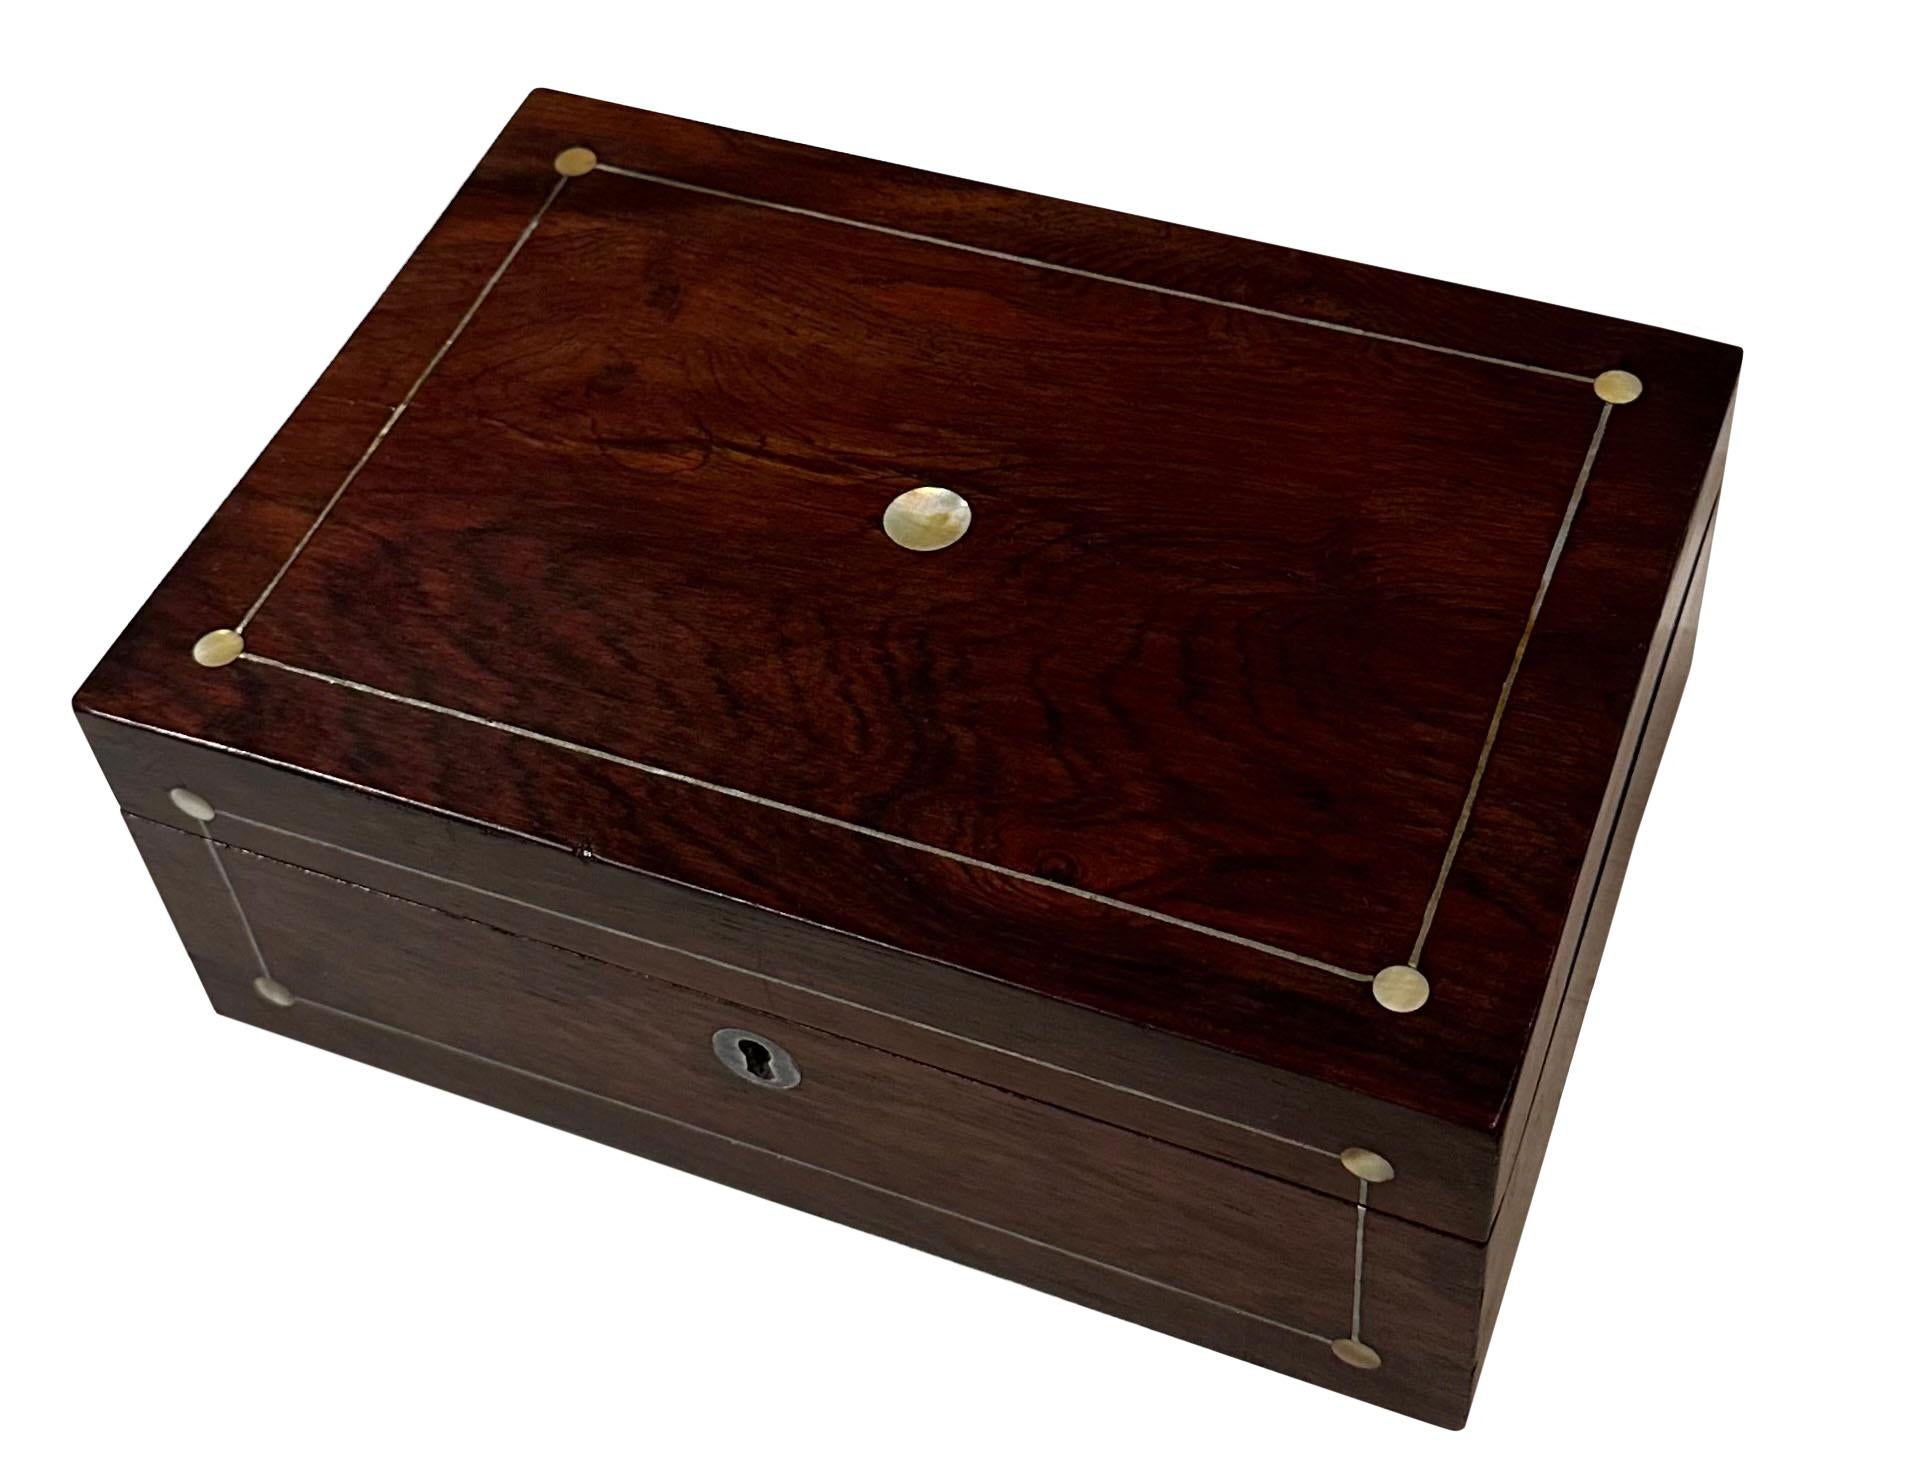 Boîte anglaise du 19e siècle avec incrustation de nacre et d'argent. La boîte est dotée d'un plateau amovible avec différents compartiments et d'un magnifique papier au point de flamme à l'intérieur. Une très belle boîte.
